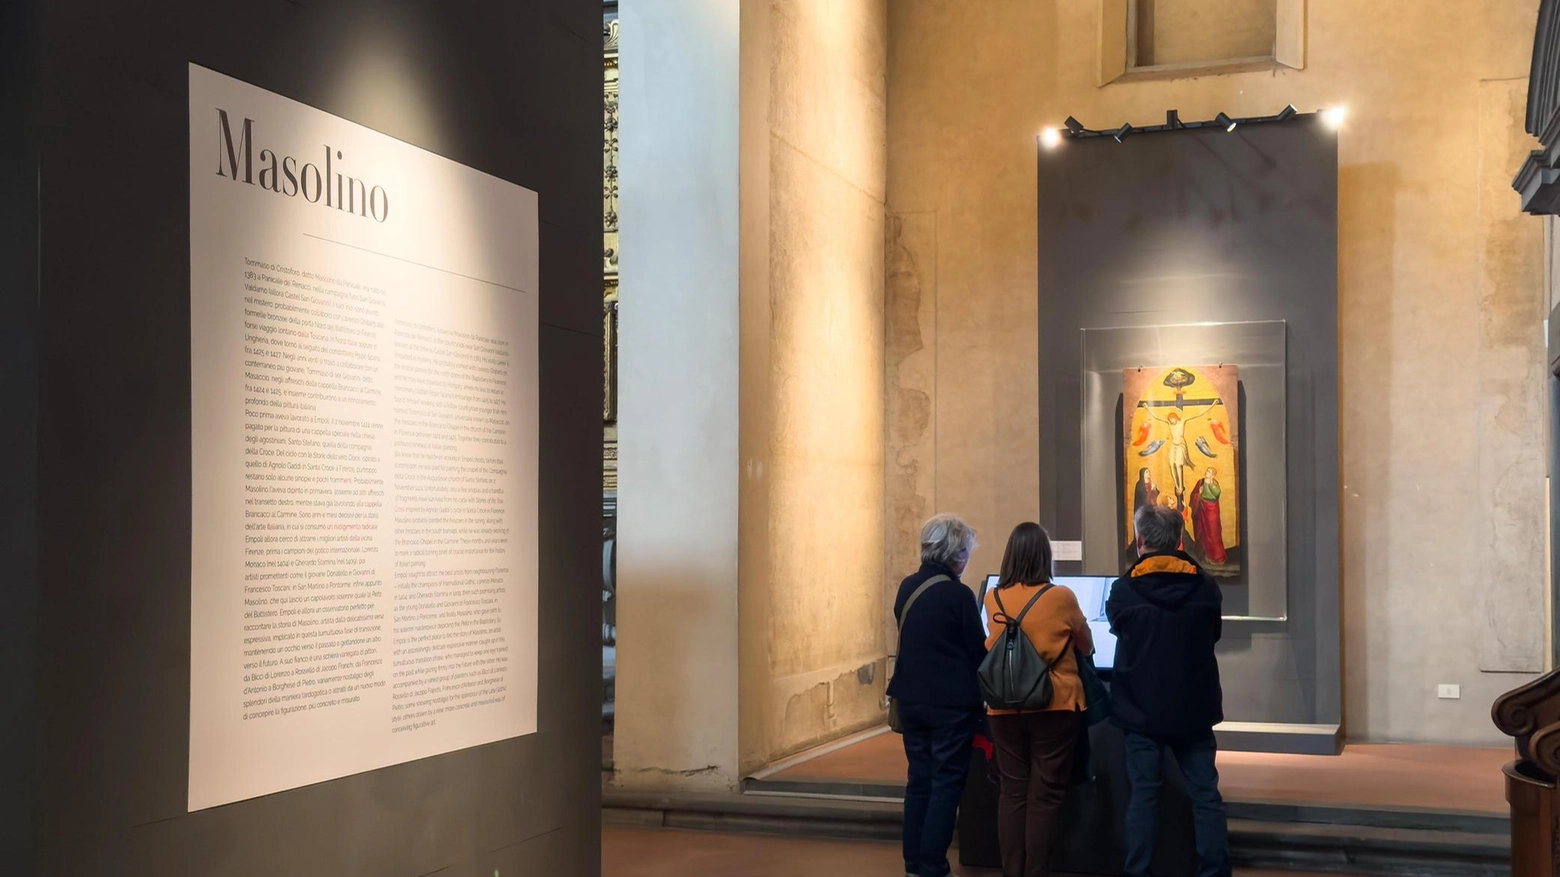 Al Museo della Collegiata di Sant’Andrea e alla Chiesa di Santo Stefano ad Empoli, sono in corso visite guidate alla mostra “Empoli 1424. Masolino e gli albori del Rinascimento” fino al 7 luglio. Prenotazione obbligatoria.